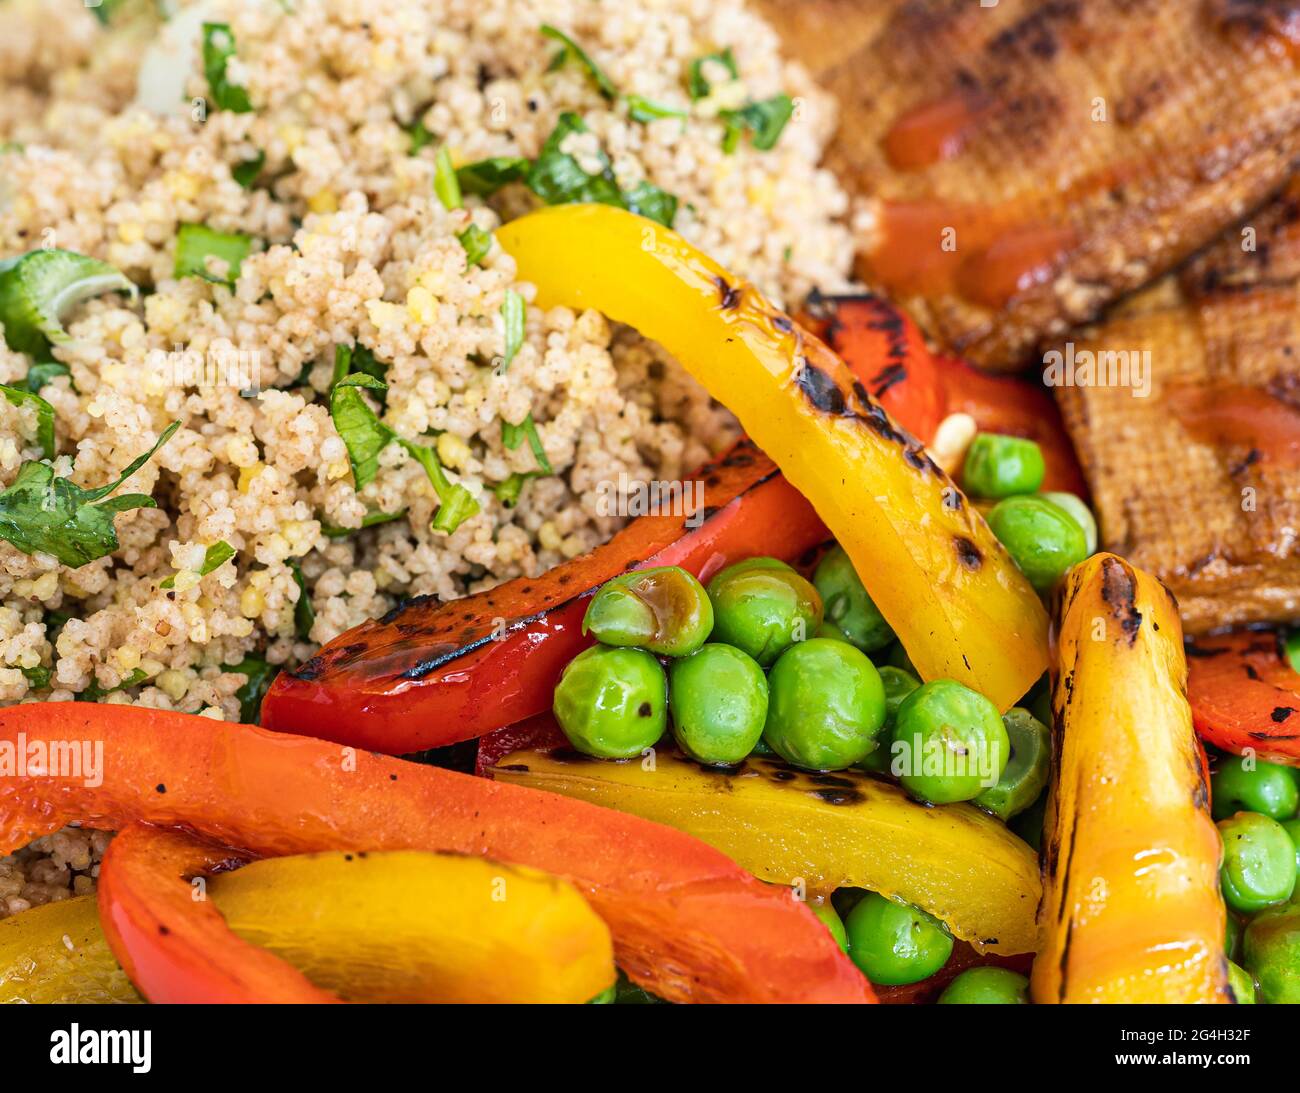 Le restaurant végétarien sert des plats faits maison avec du tofu et des légumes grillés au couscous Banque D'Images